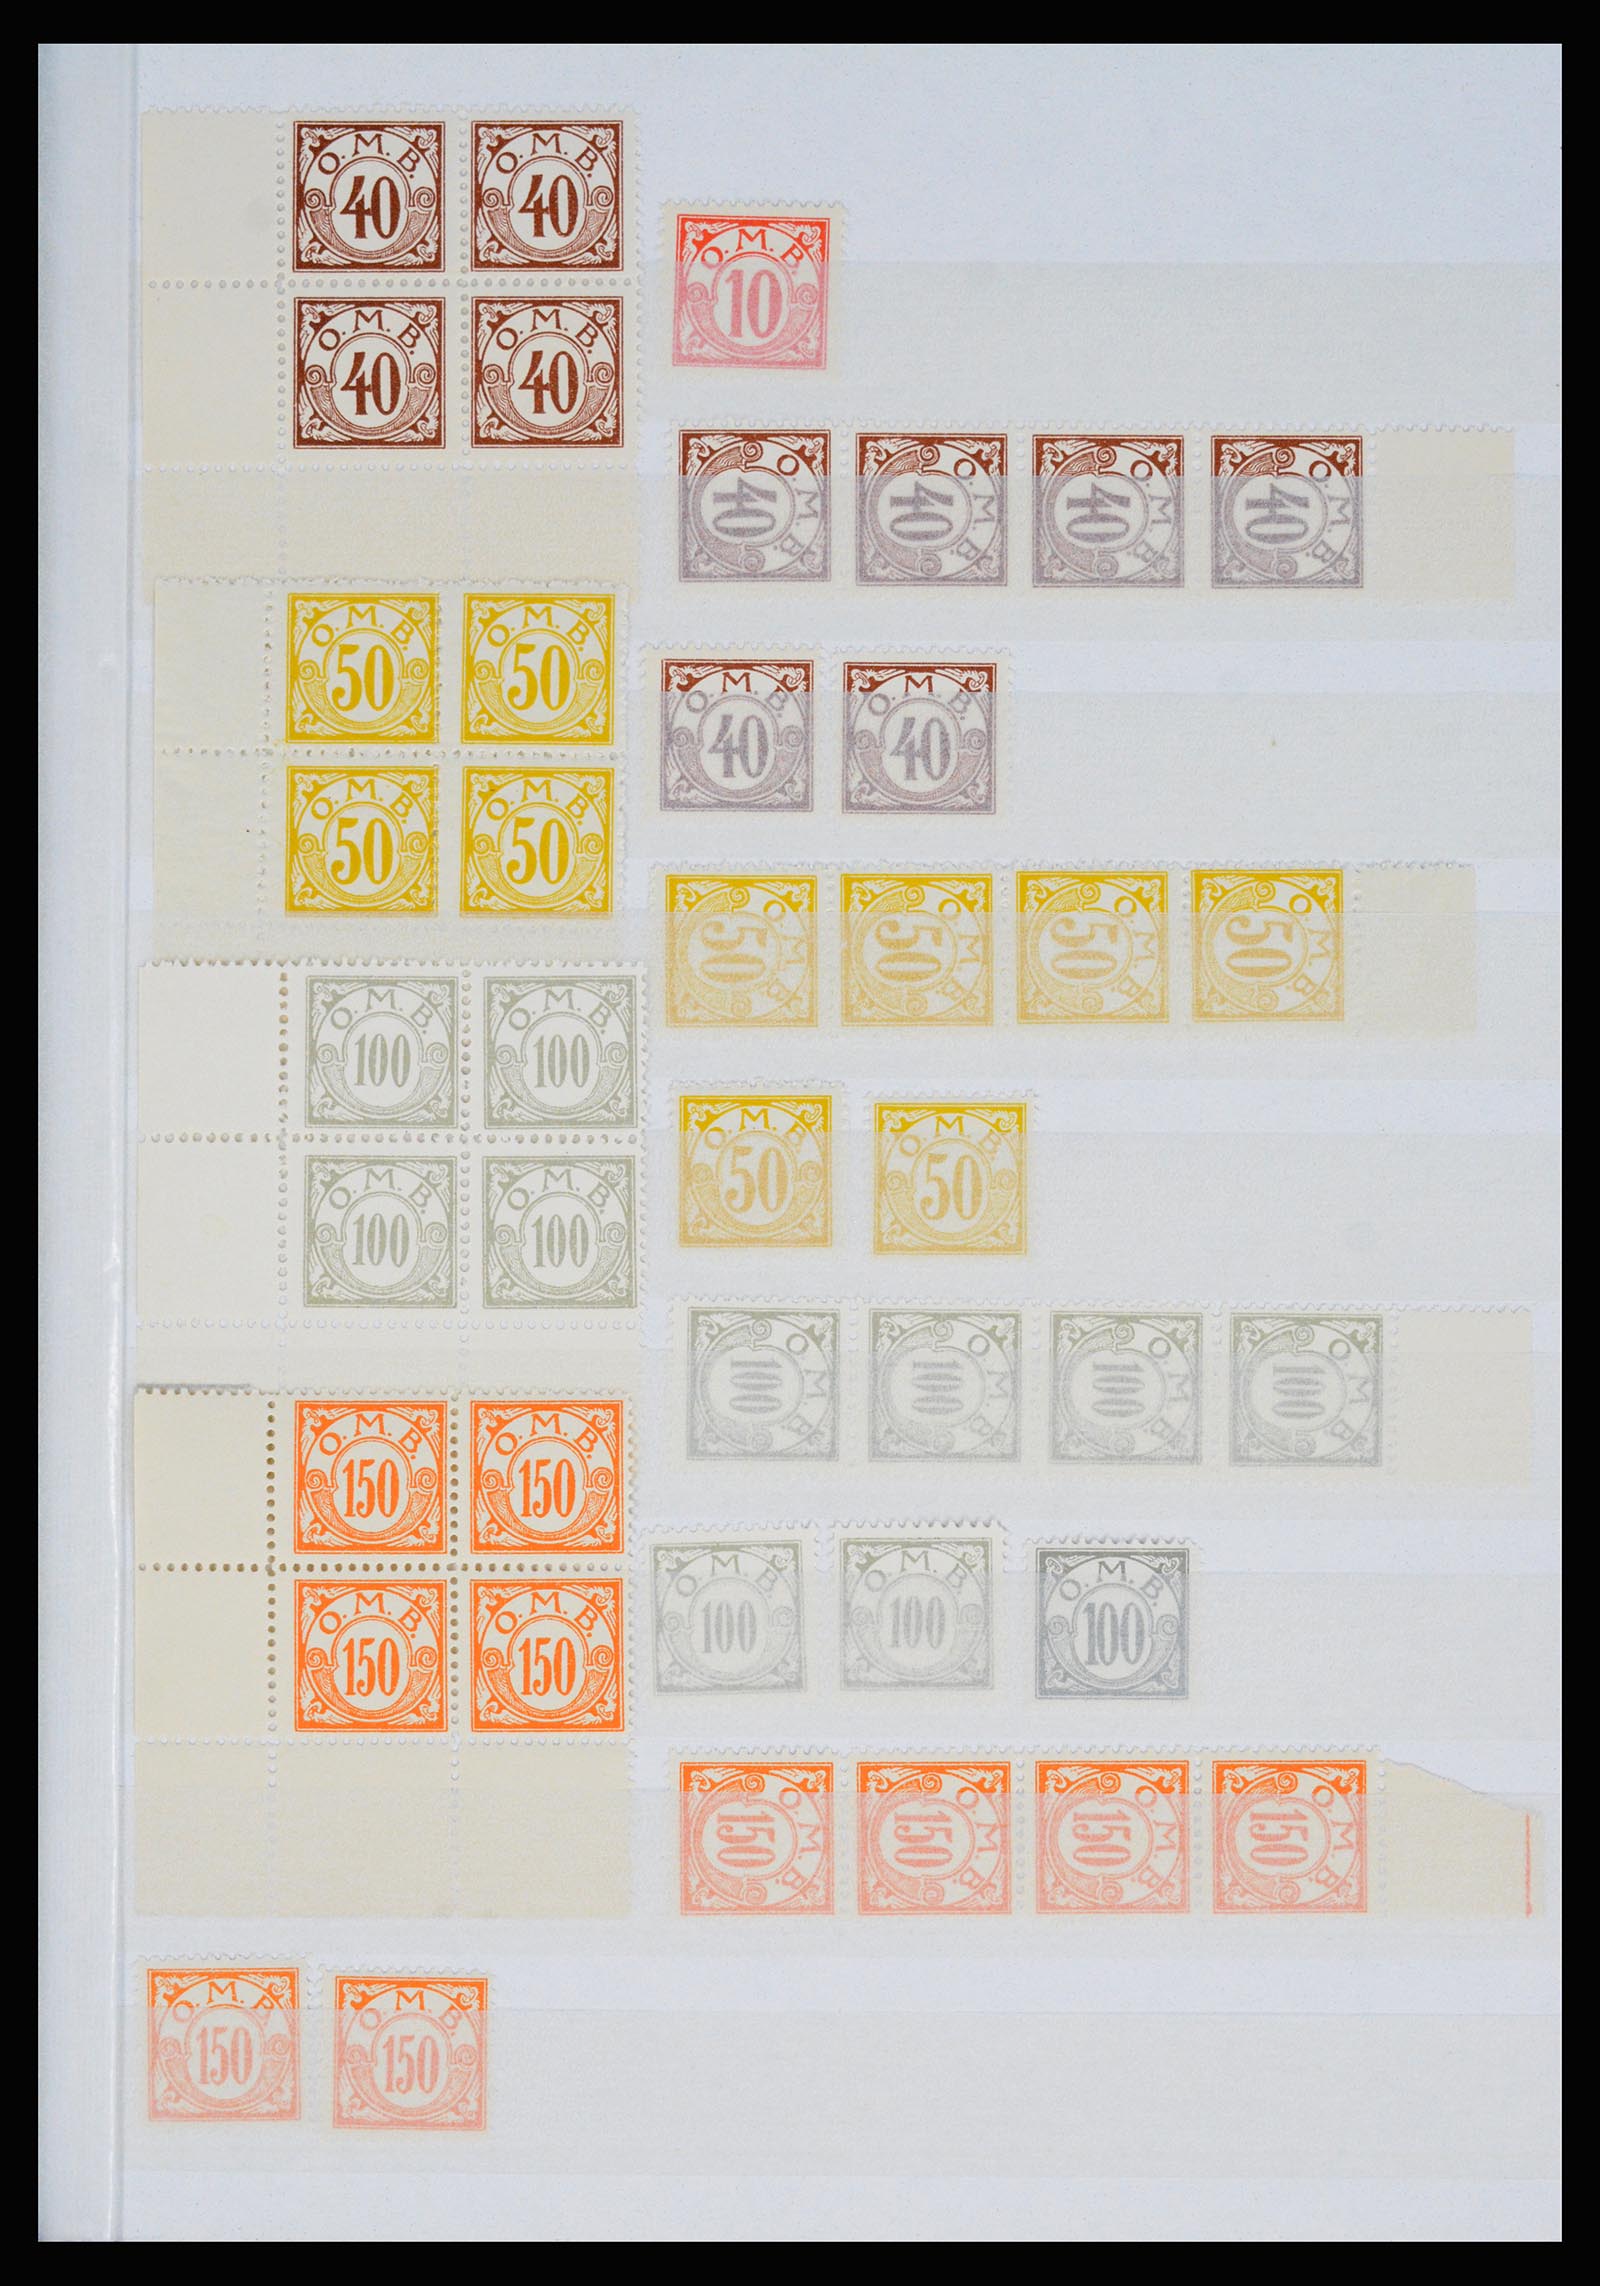 36982 110 - Postzegelverzameling 36982 Denemarken spoorwegzegels.